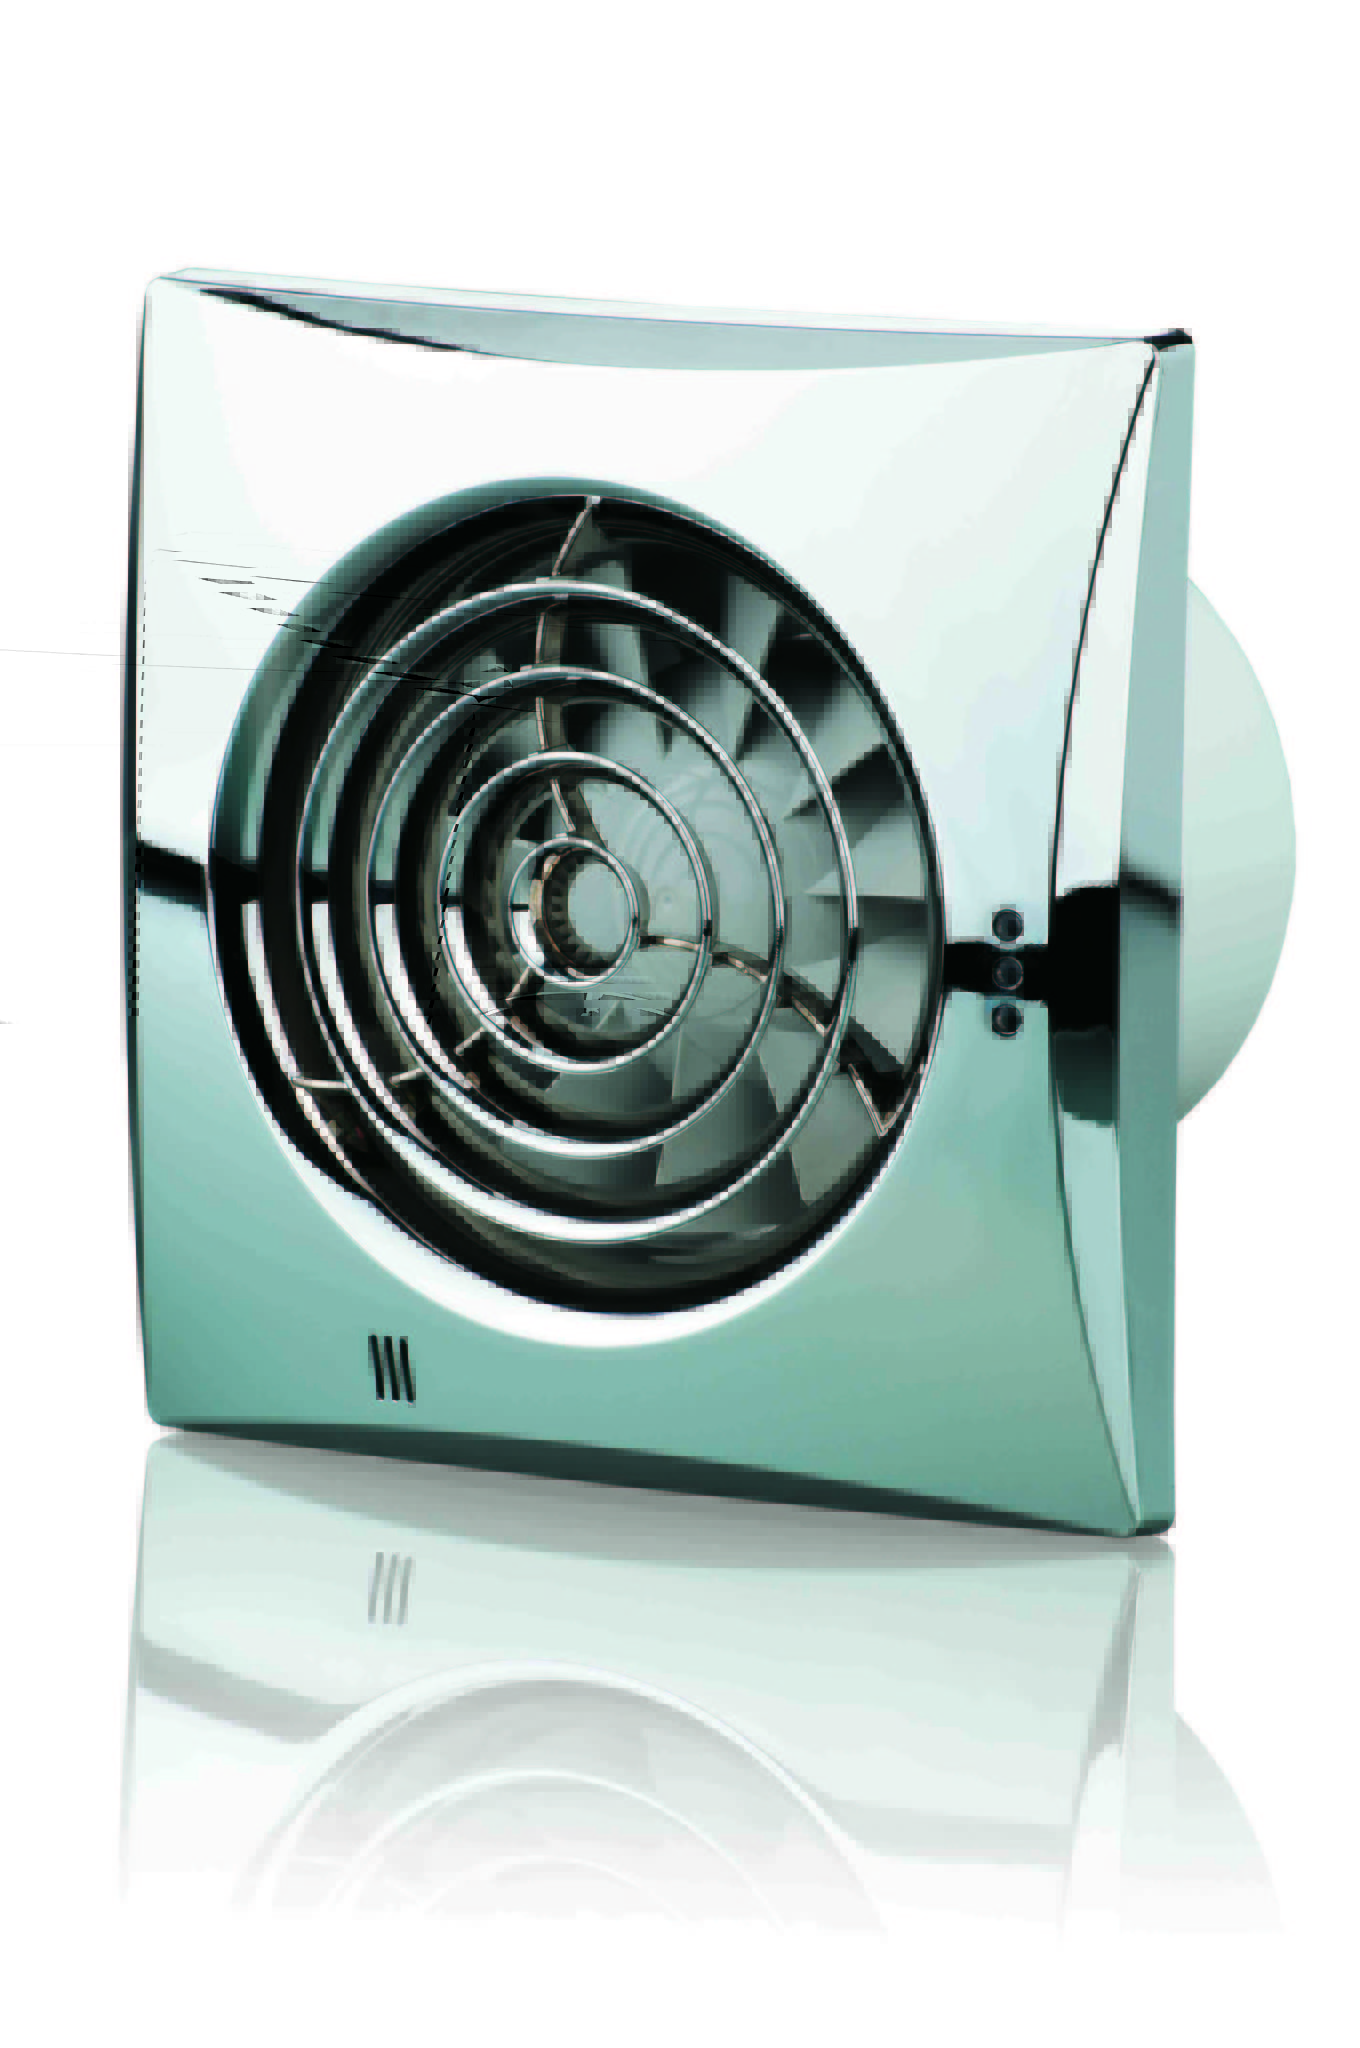 вентилятор вытяжной для кухни мощный на вытяжку